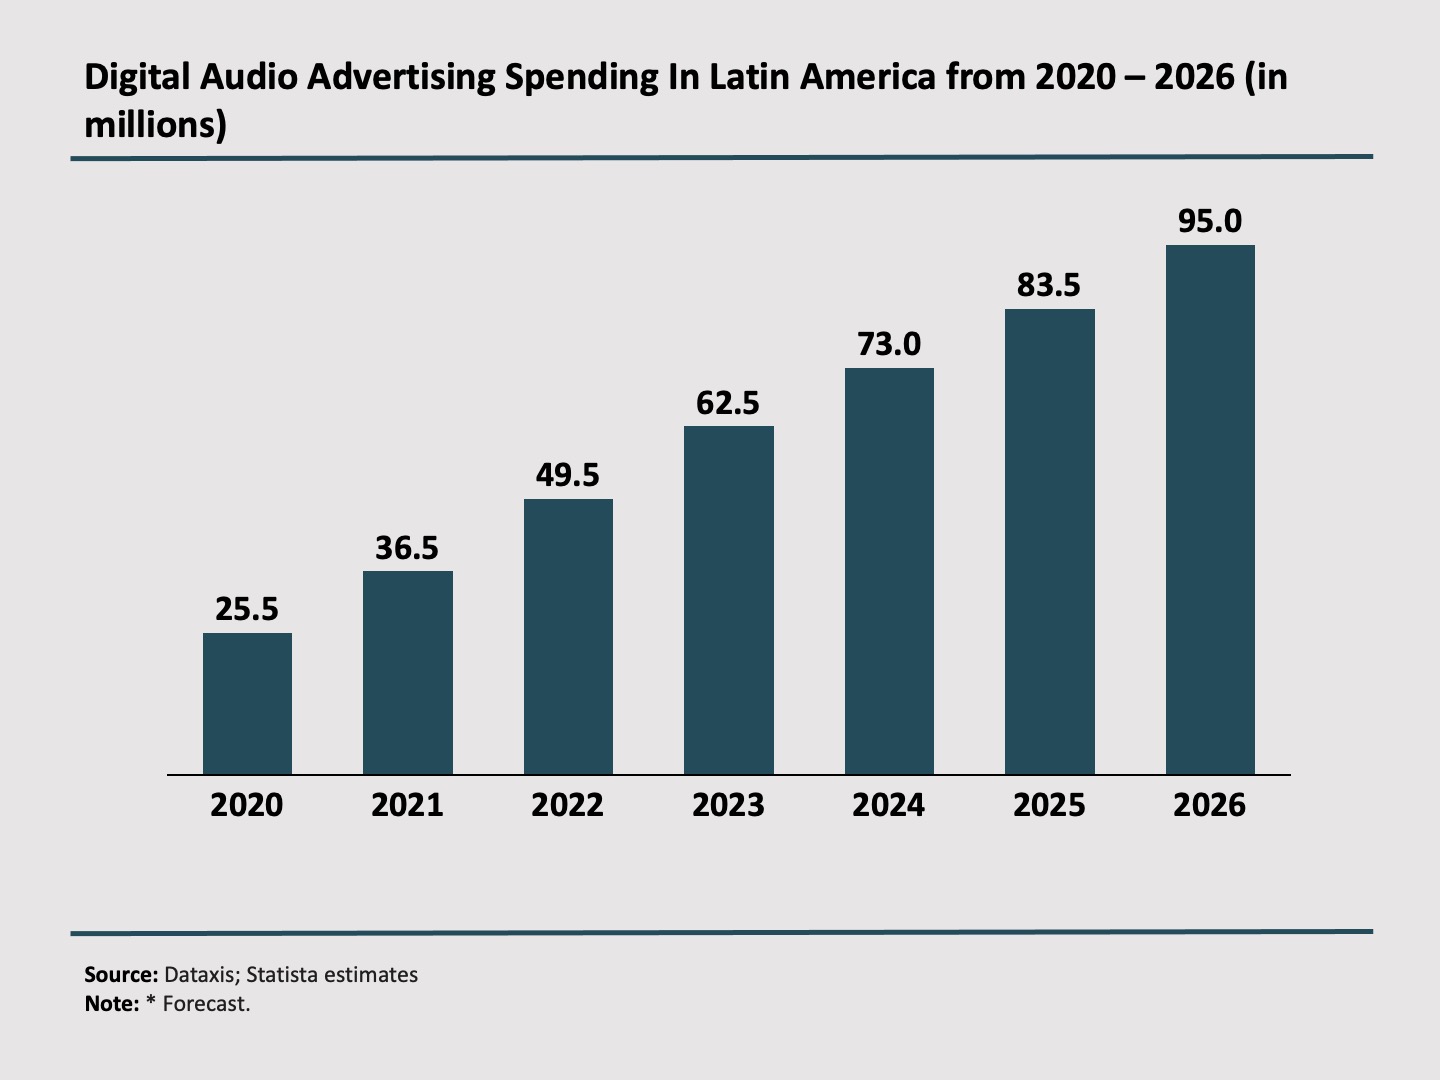 Sigital Audio Advertising Spending